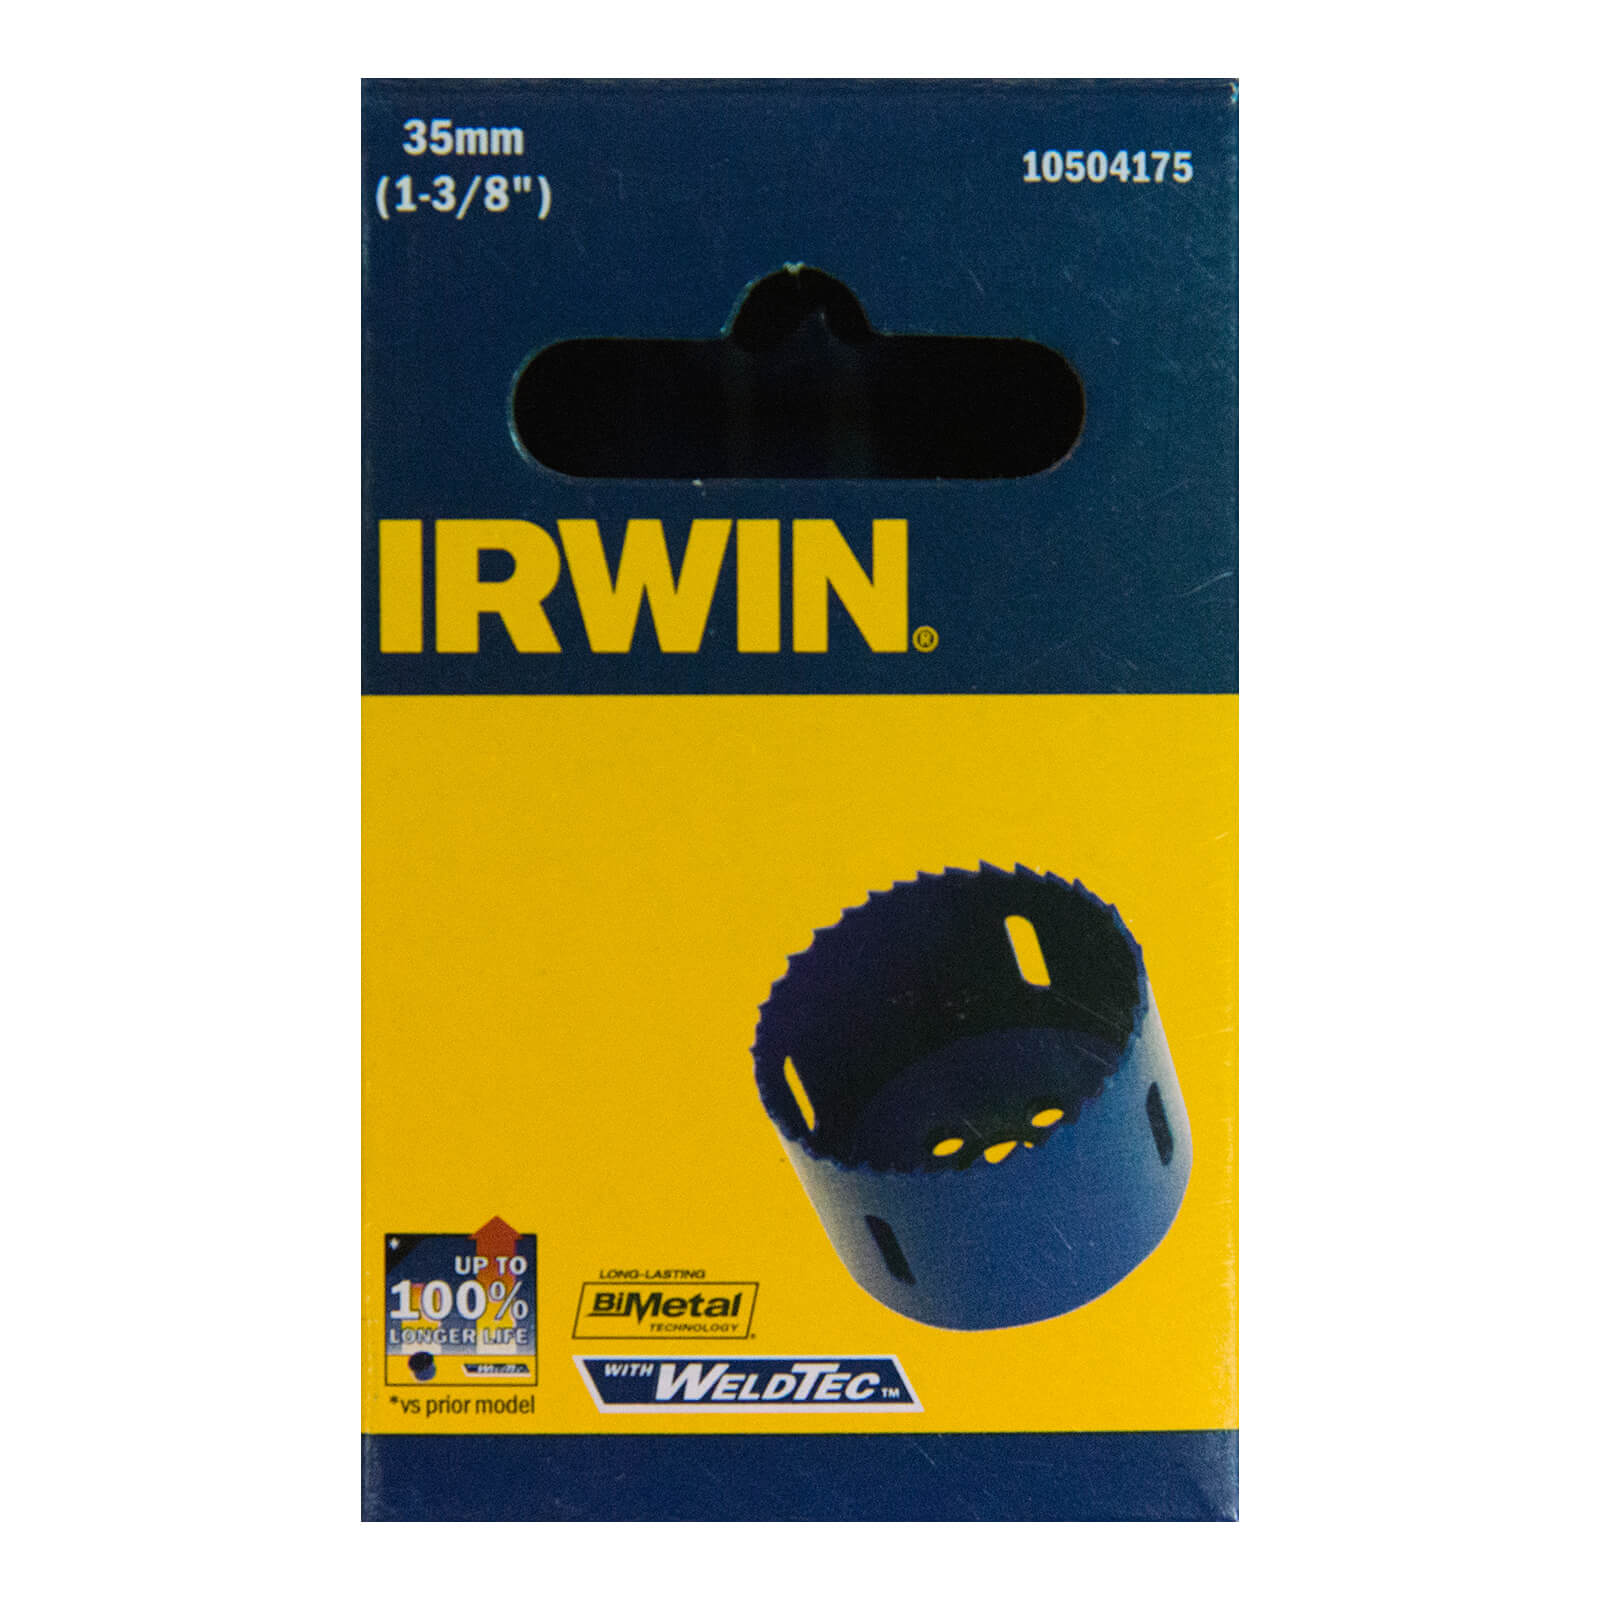 IRWIN Bi-Metal Hole Saw - 35mm